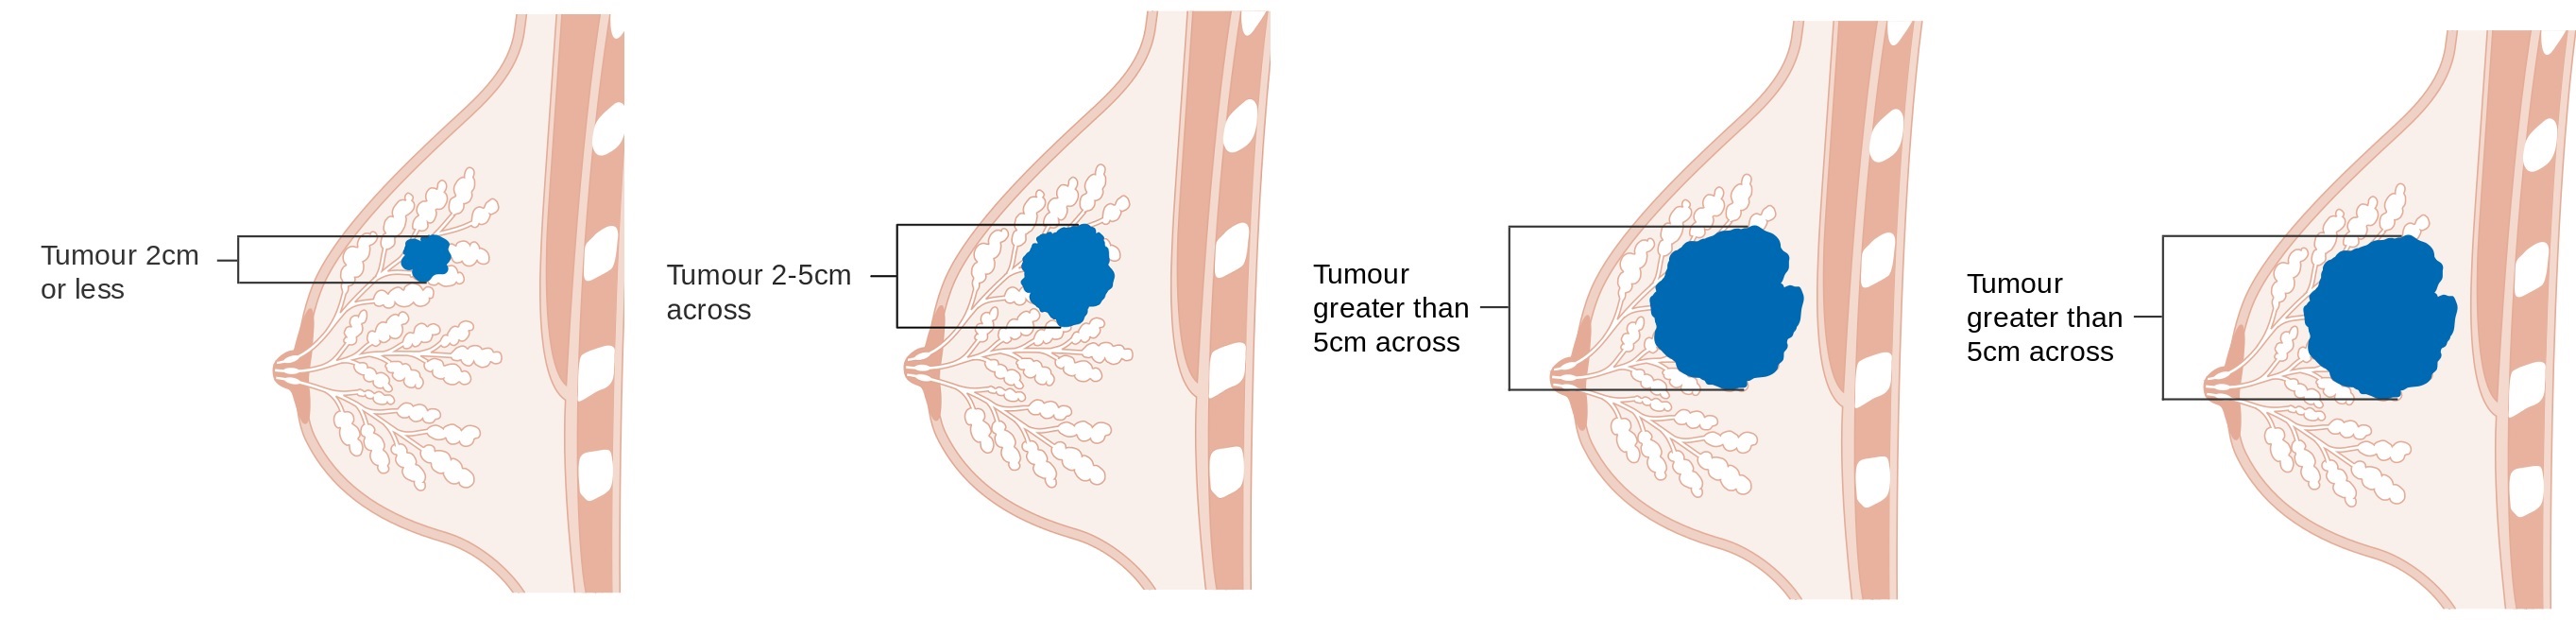 Diagram znázorňující stádia nádoru T1,T2,T3, T4. (Kredit: Cancer Research UK, CRUK, Zdroj: Wikimedia).